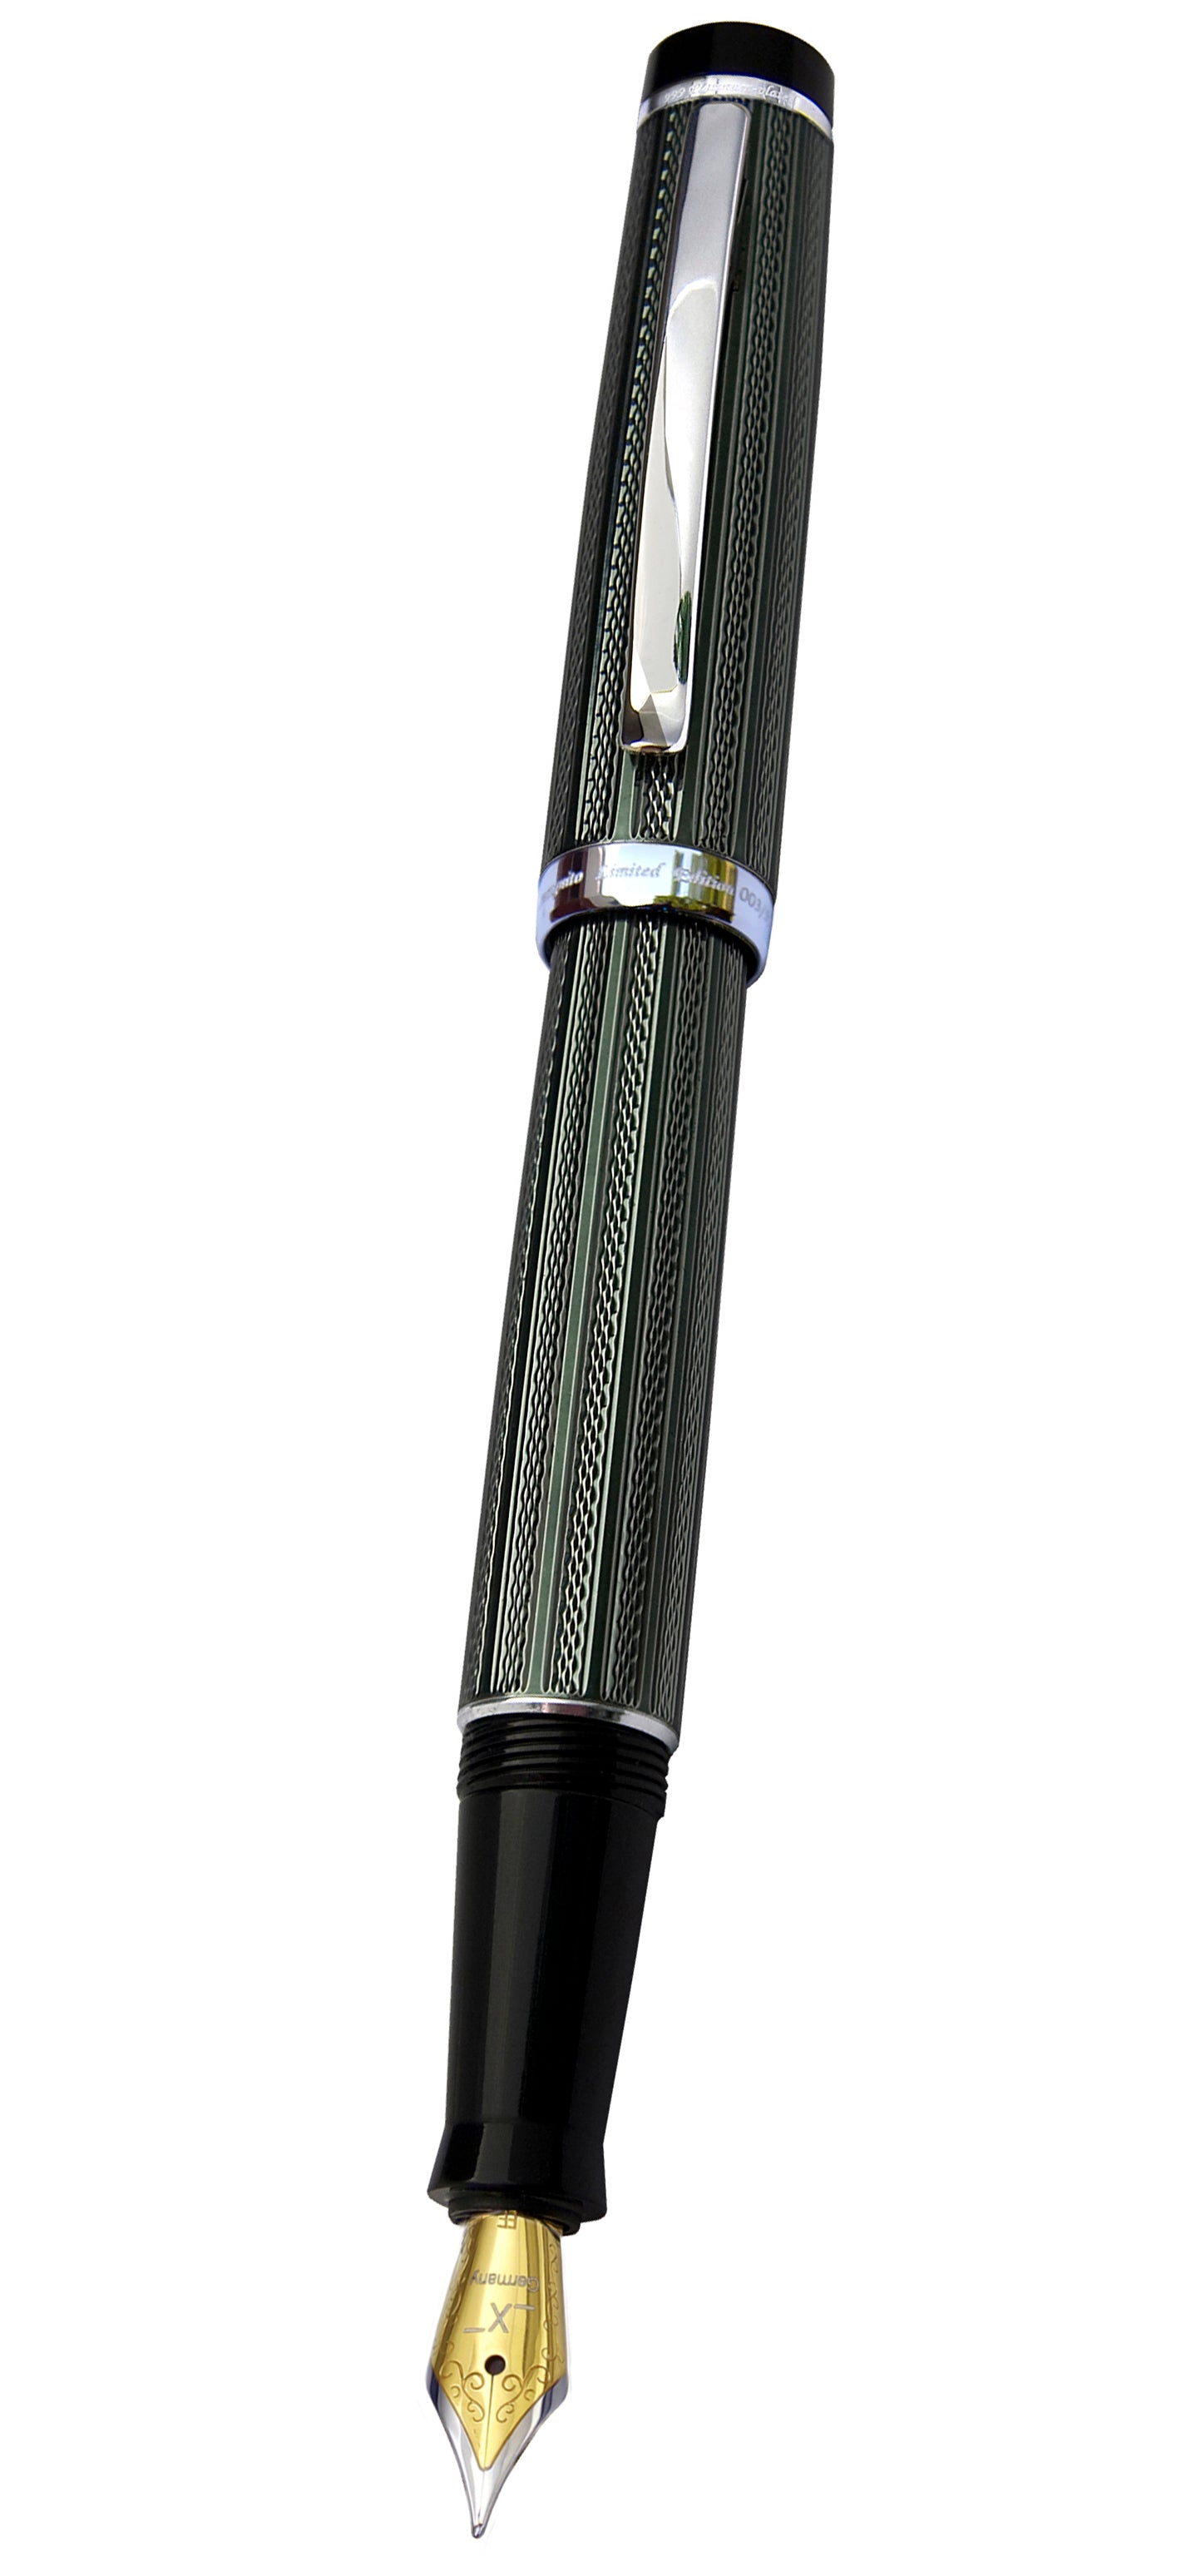 Xezo - Front view of the Incognito Zinc F-2 fountain pen